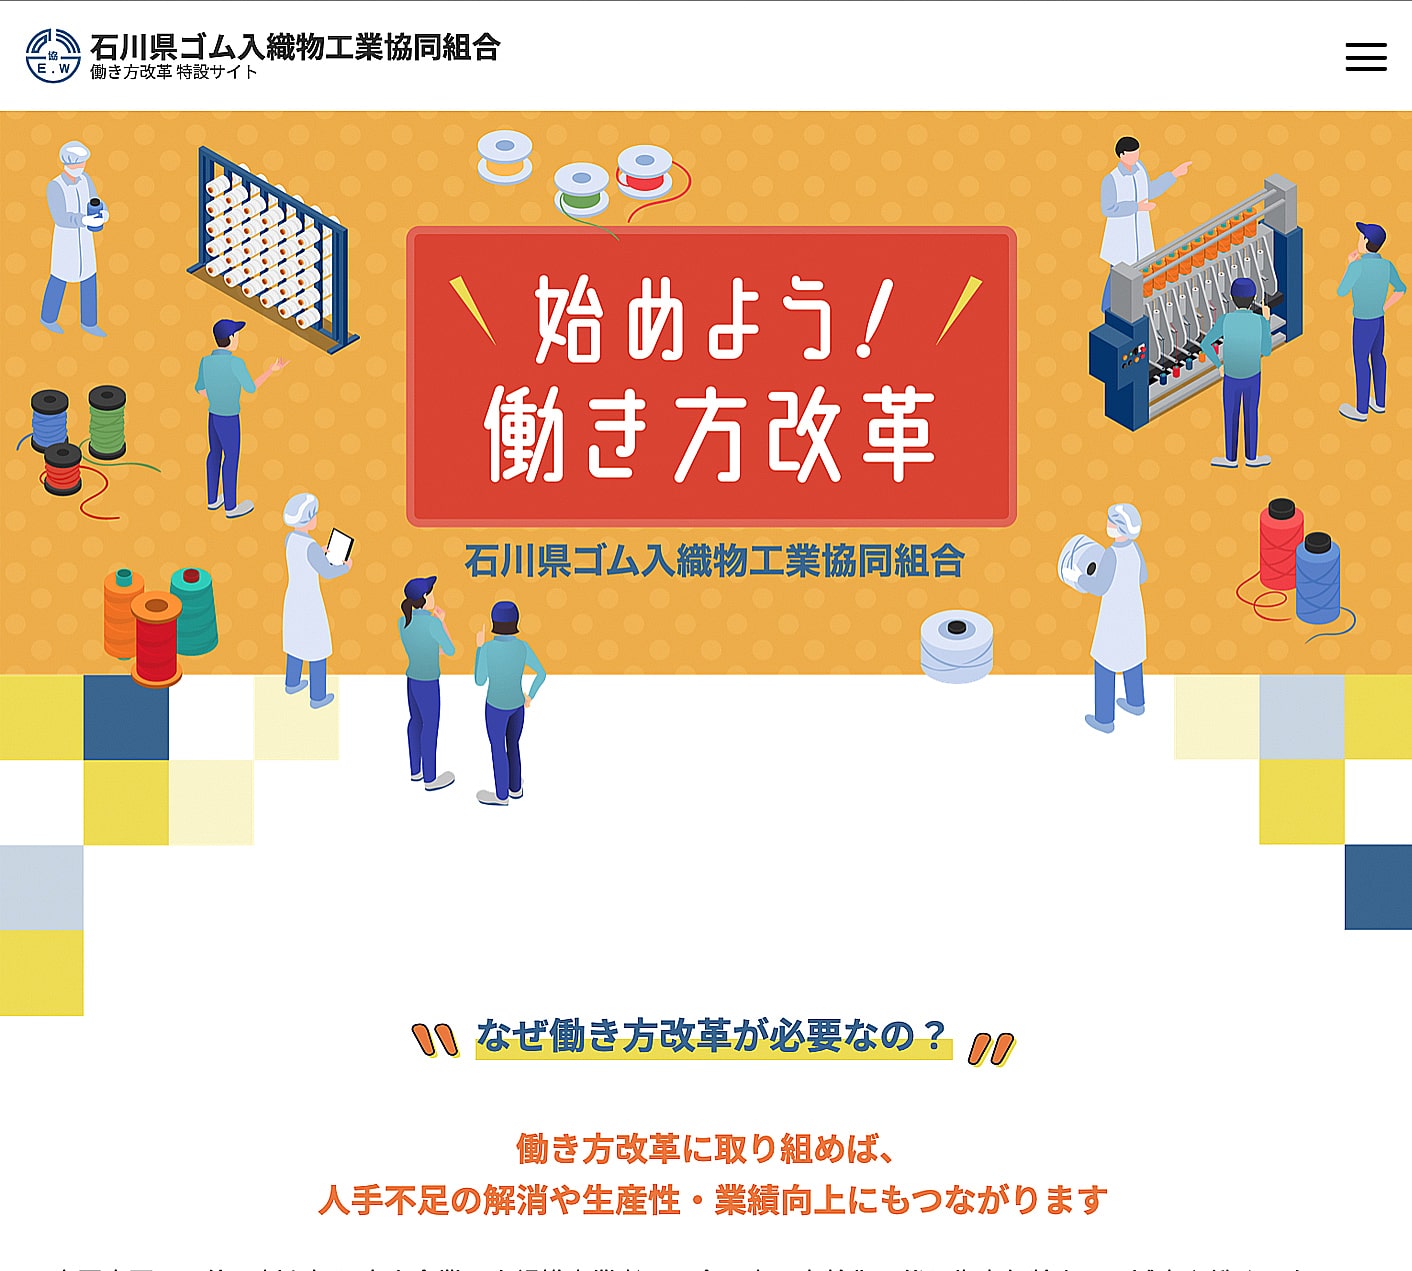 石川県ゴム入織物工業協同組合働き方改革特設サイト イメージ